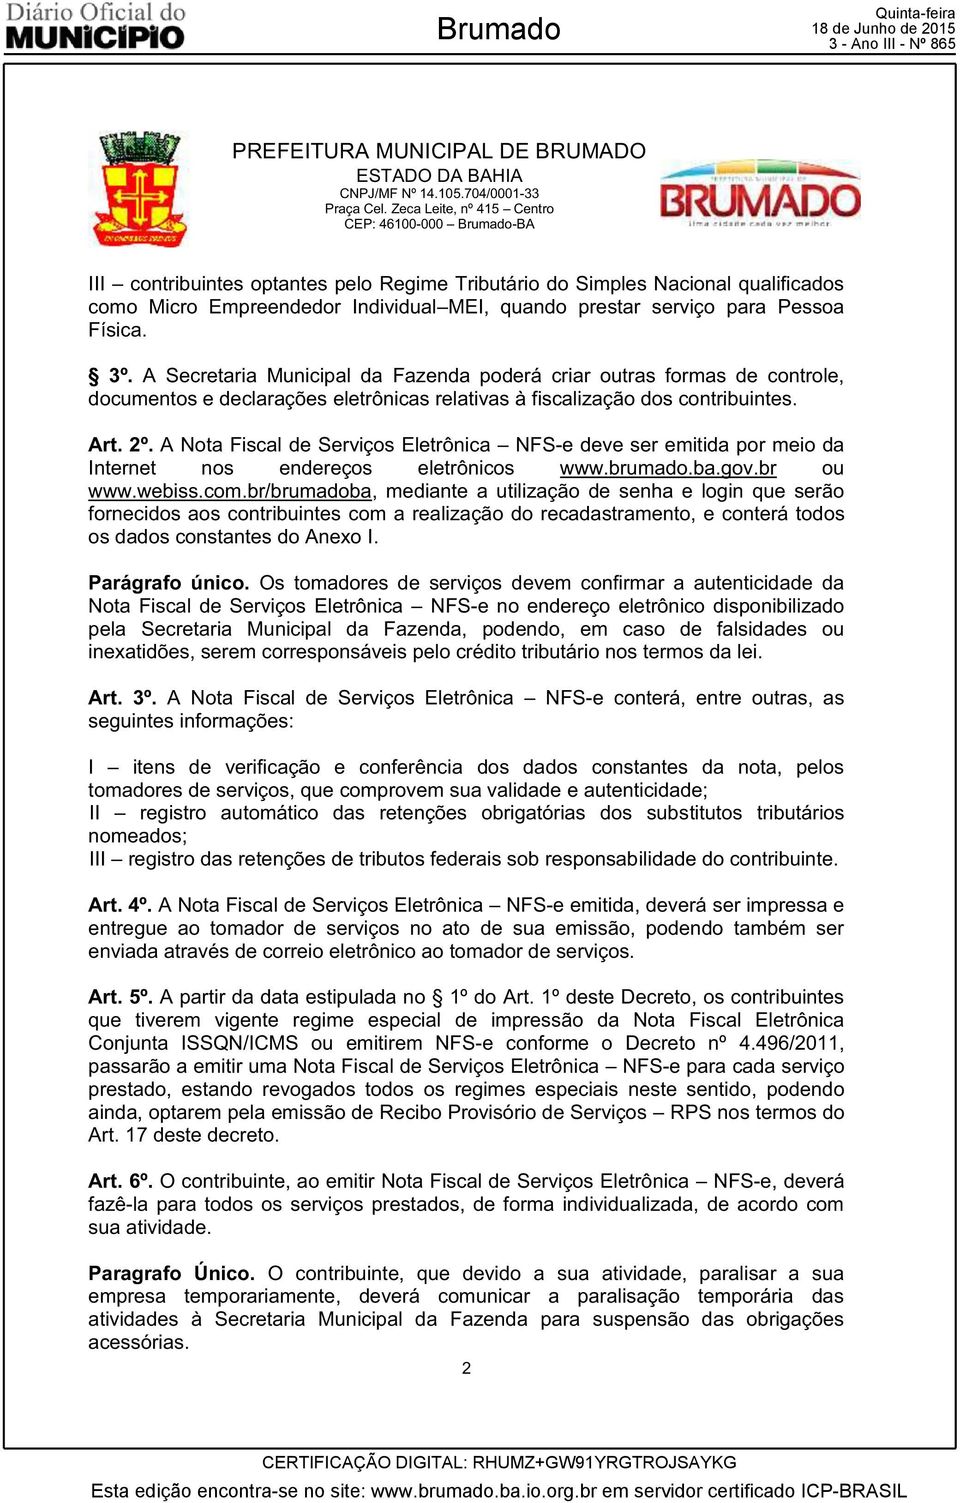 A Nota Fiscal de Serviços Eletrônica NFS-e deve ser emitida por meio da Internet nos endereços eletrônicos www.brumado.ba.gov.br ou www.webiss.com.